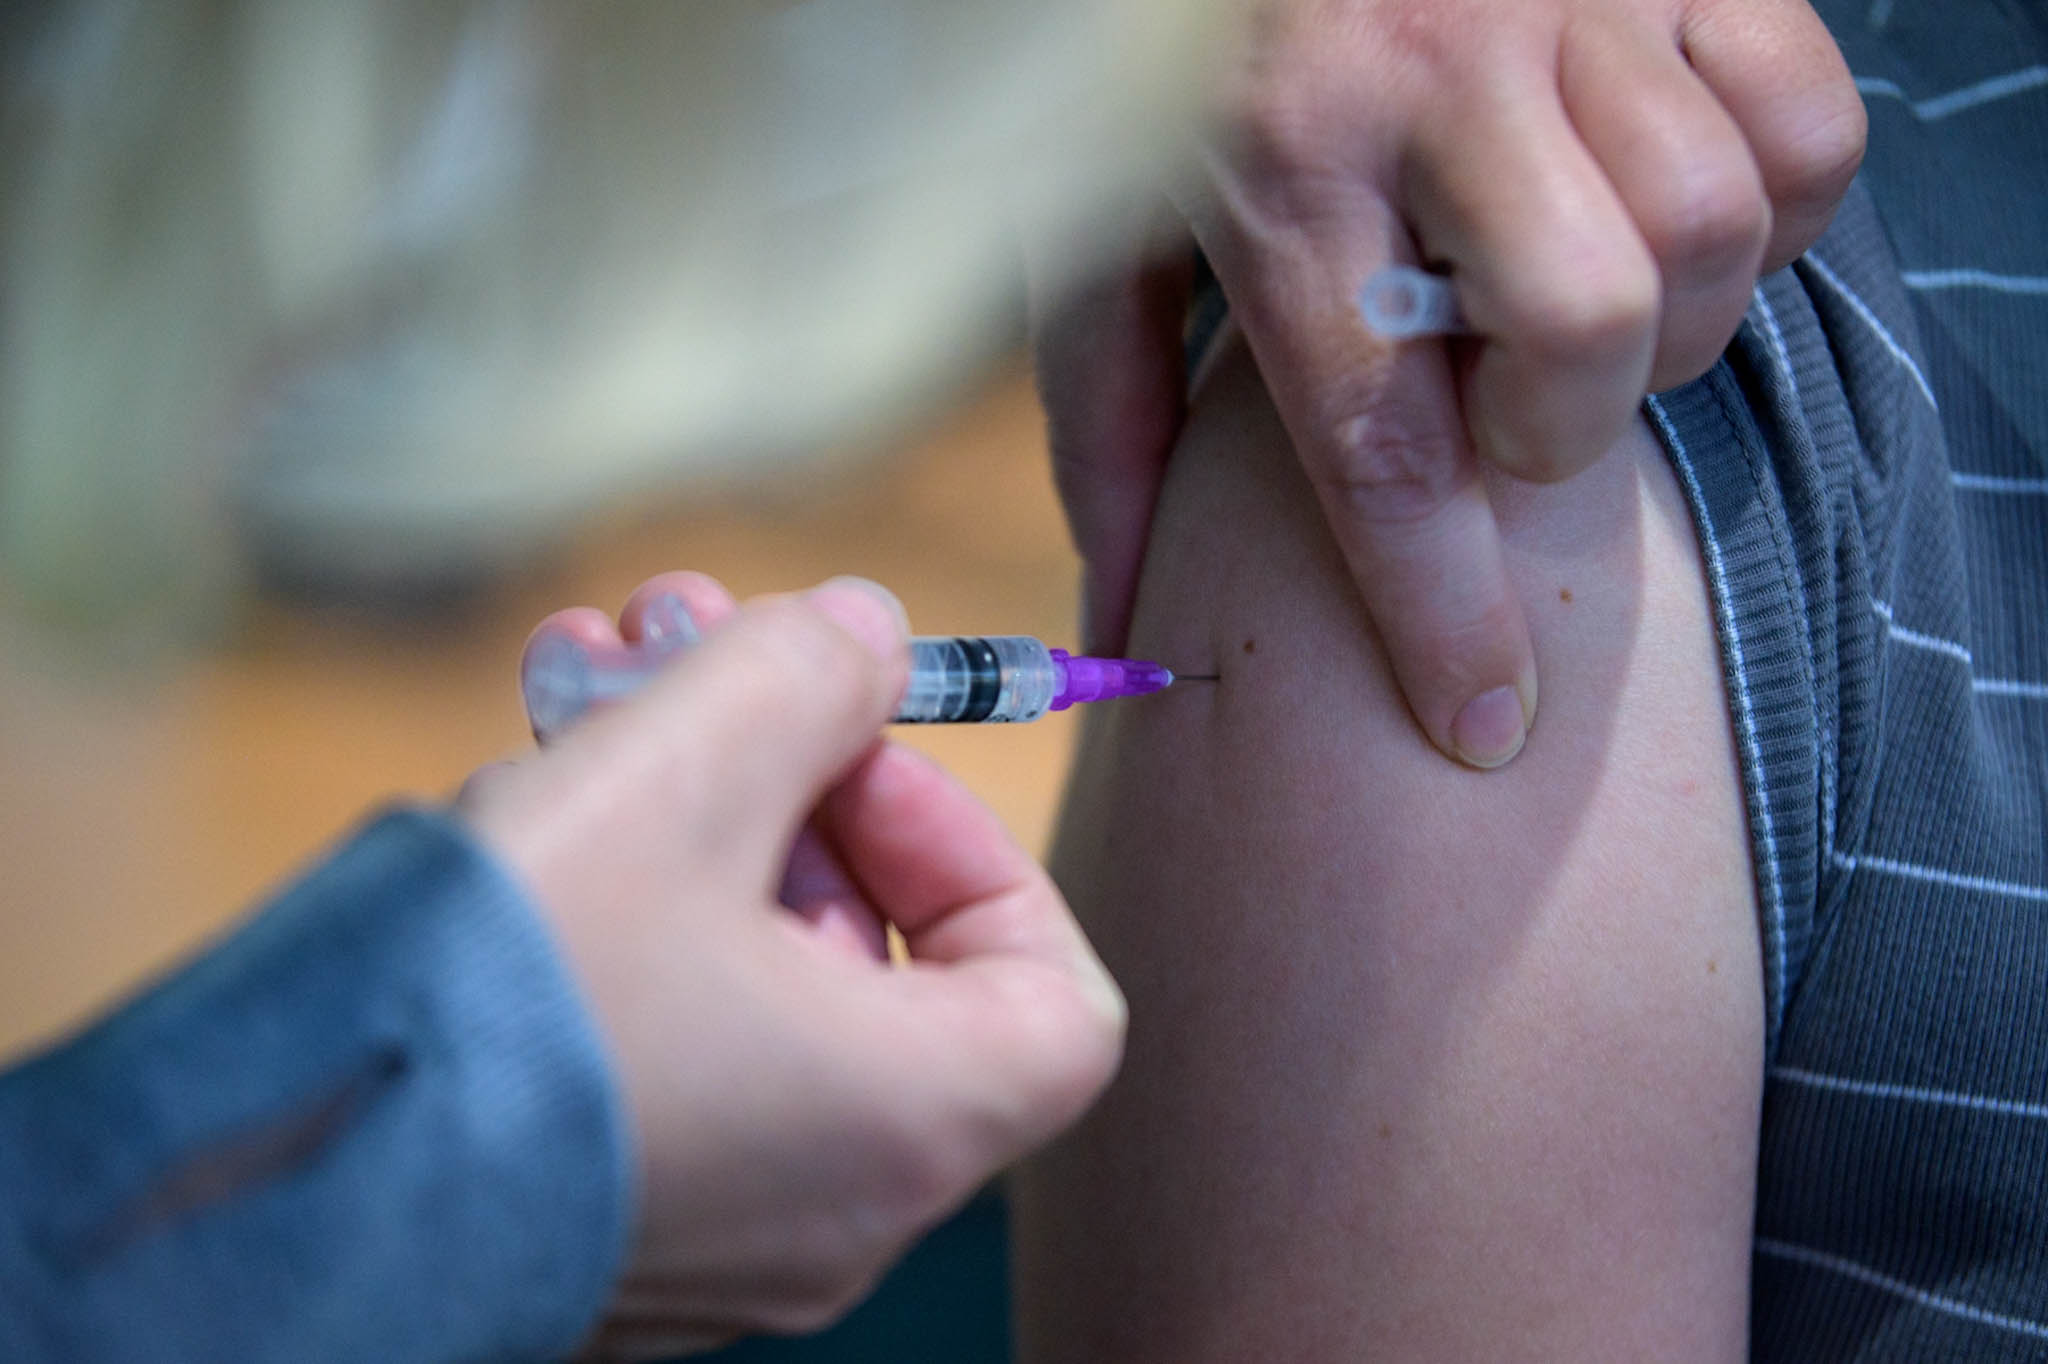 V mariborskem zdravstvenem domu to soboto akcija cepljenja proti meningitisu